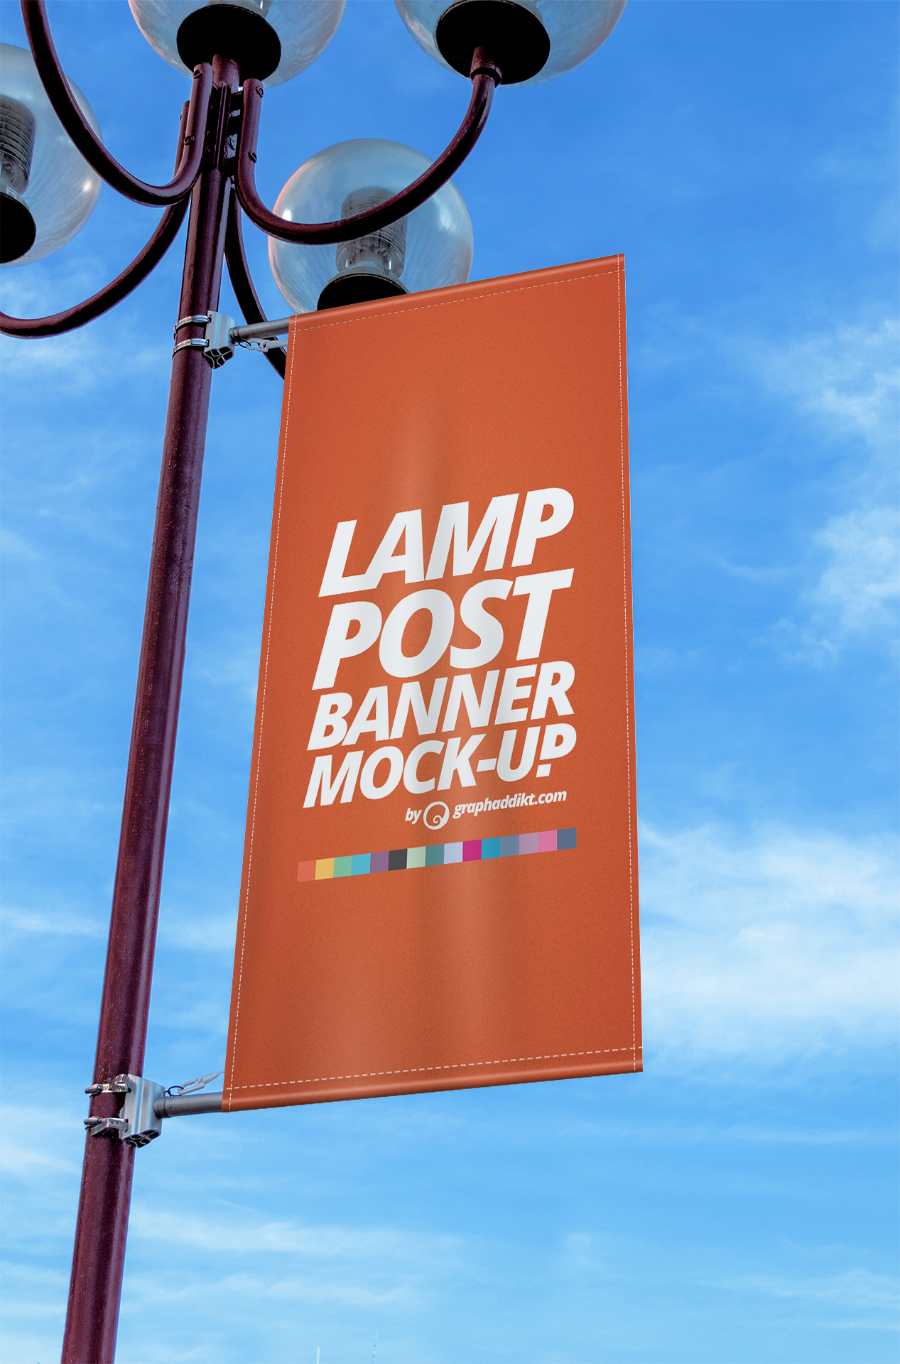 for logo mockup website â€” Resources Free Mockup Design Banner Post Free Lamp